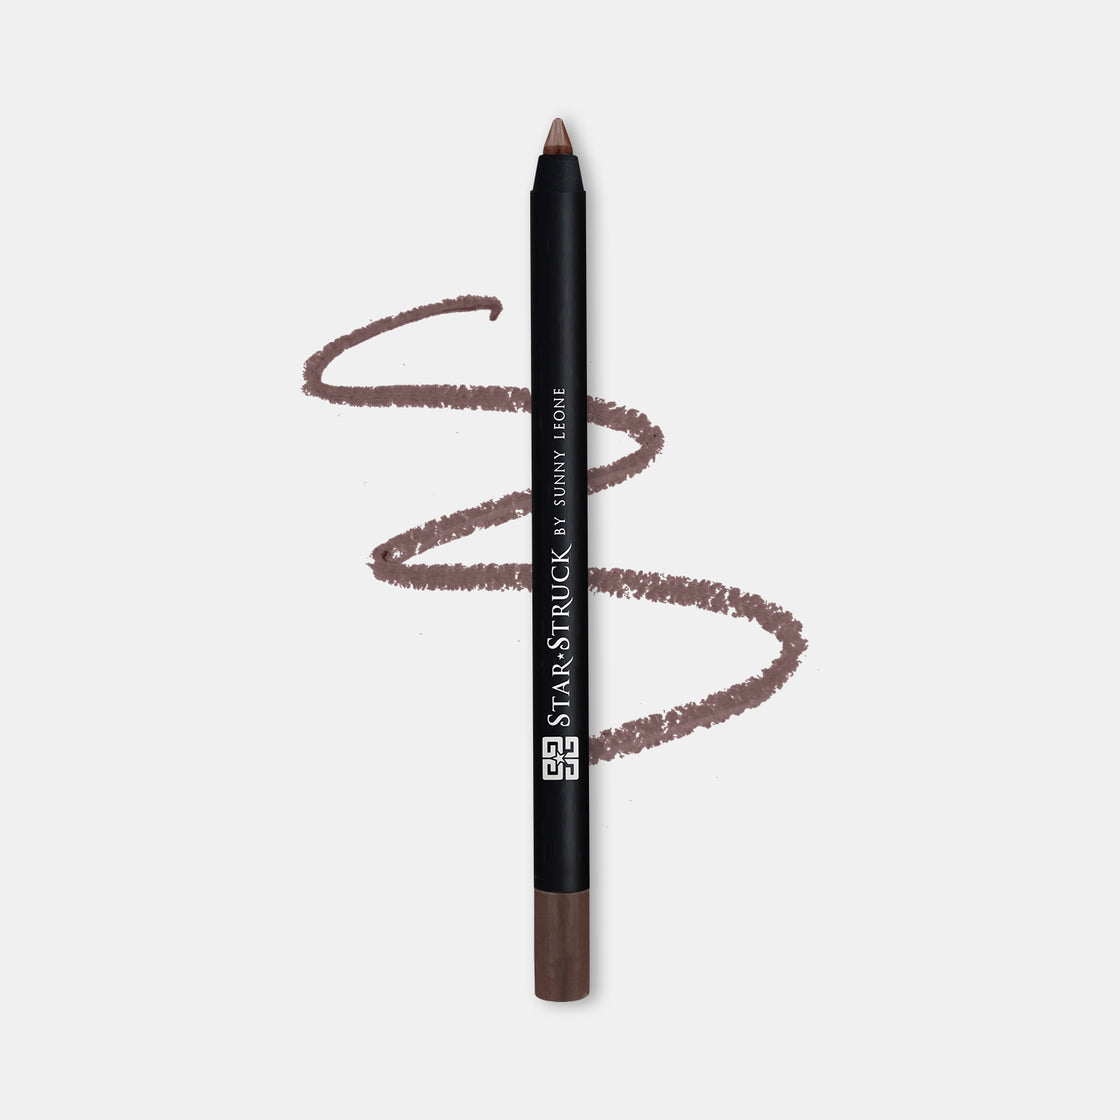 Kohl Eyeliner Pencil - Brown